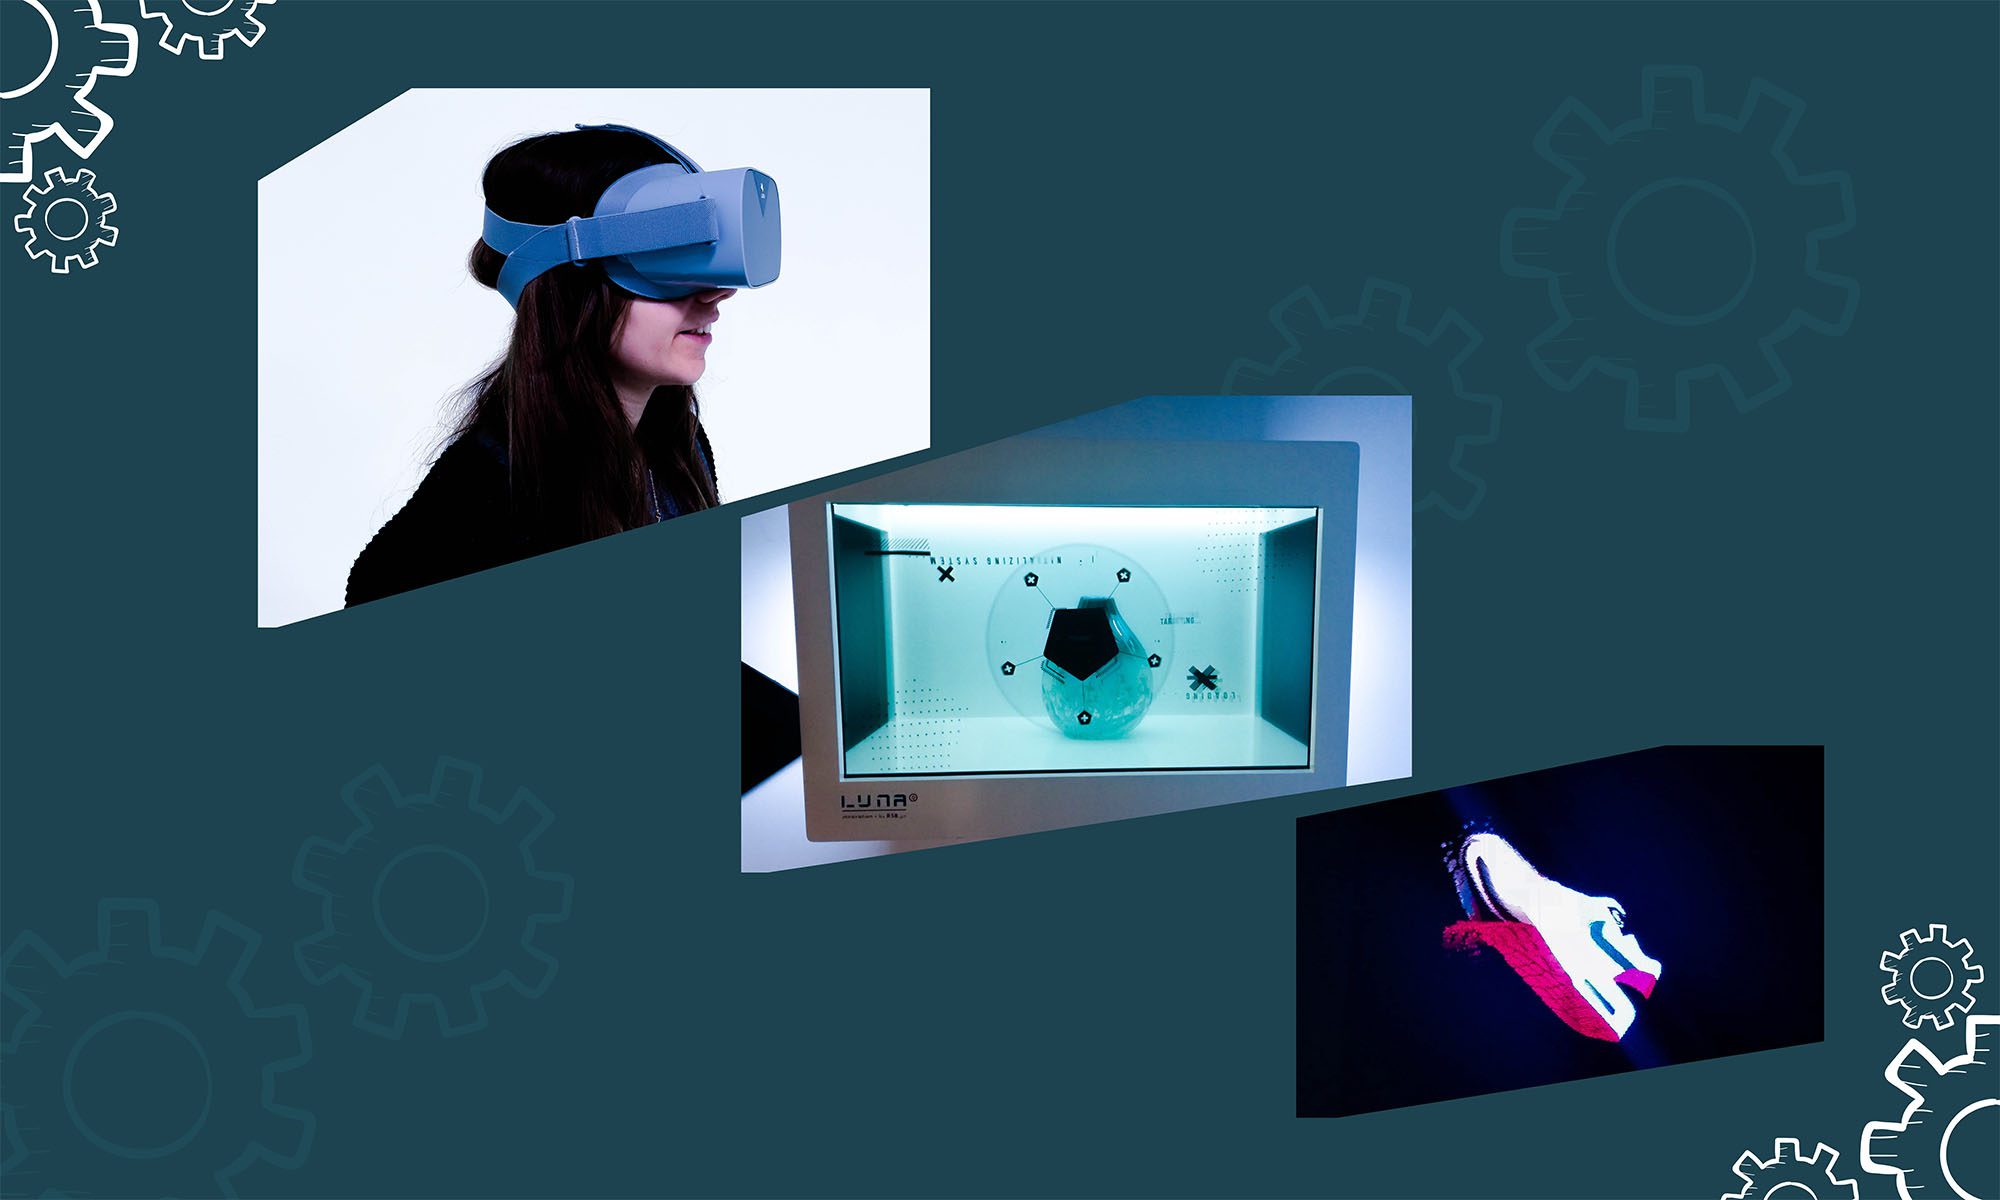 Soluções Digitais: Holograma Suspenso, Ecrã Transparente e Óculos Interativos 360º Realidade Virtual